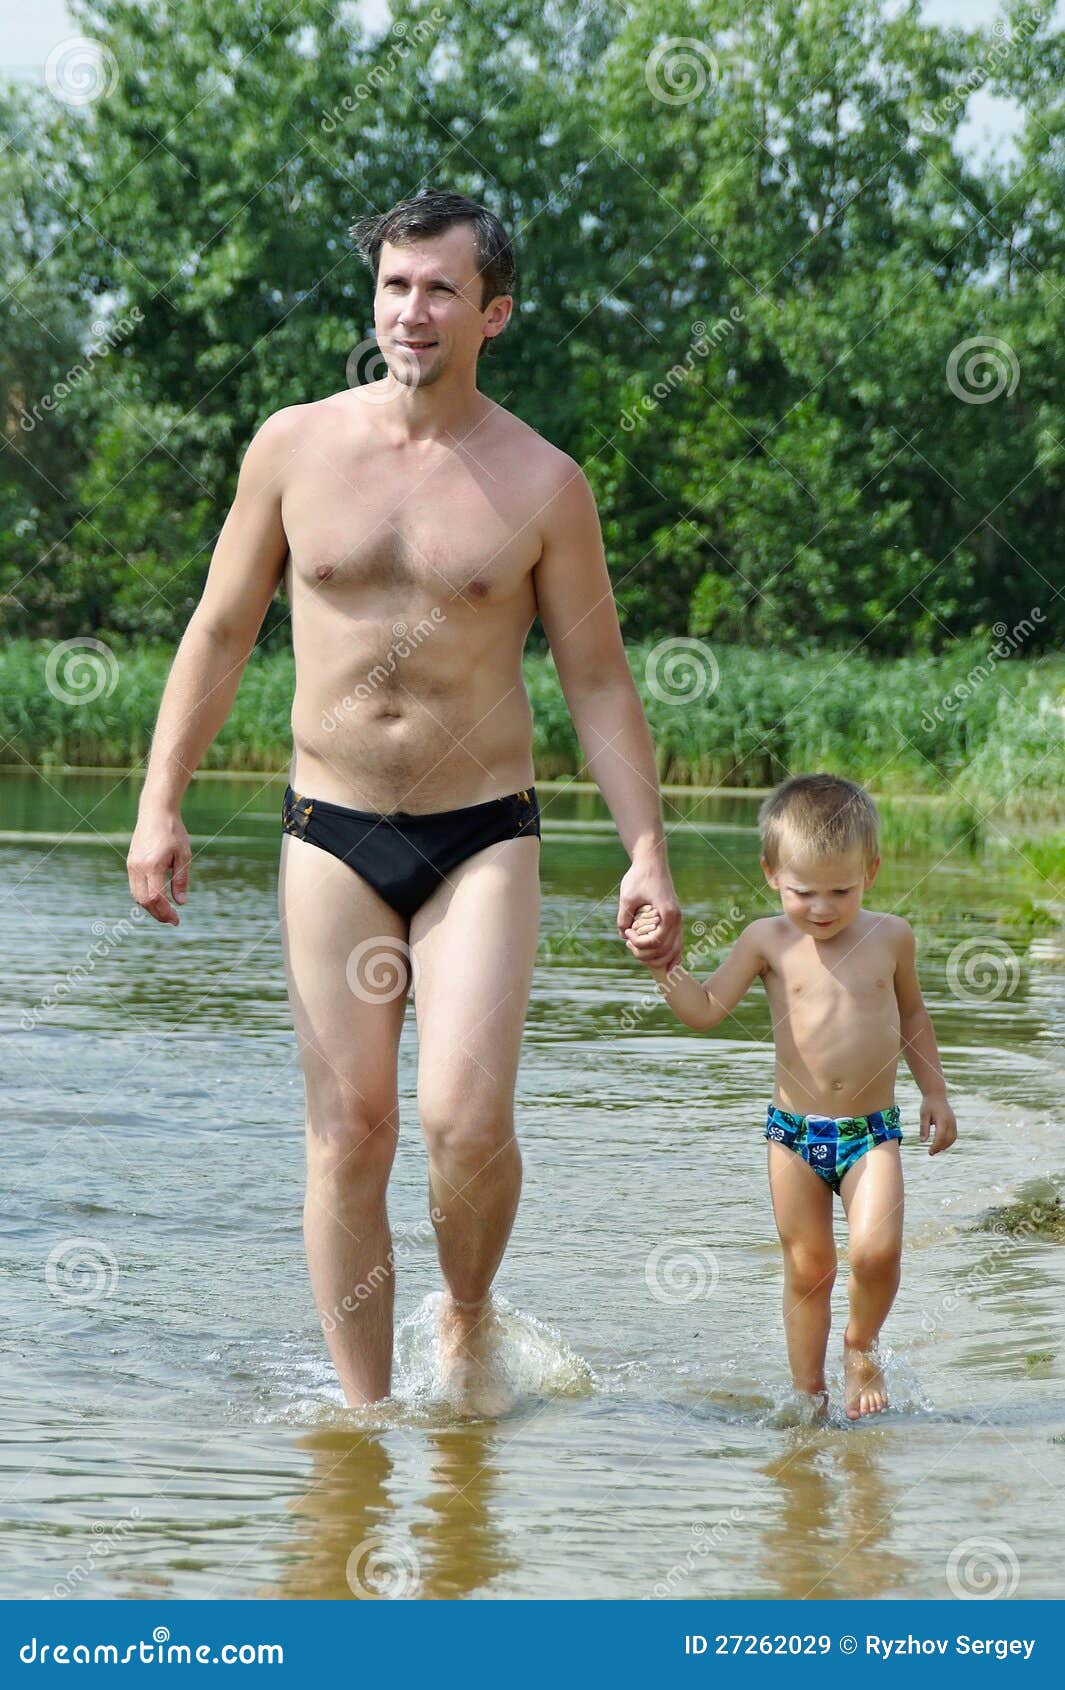 Папа сын в ванной. Голенькая с папой на пляже. Голое семейное фото с сыном.